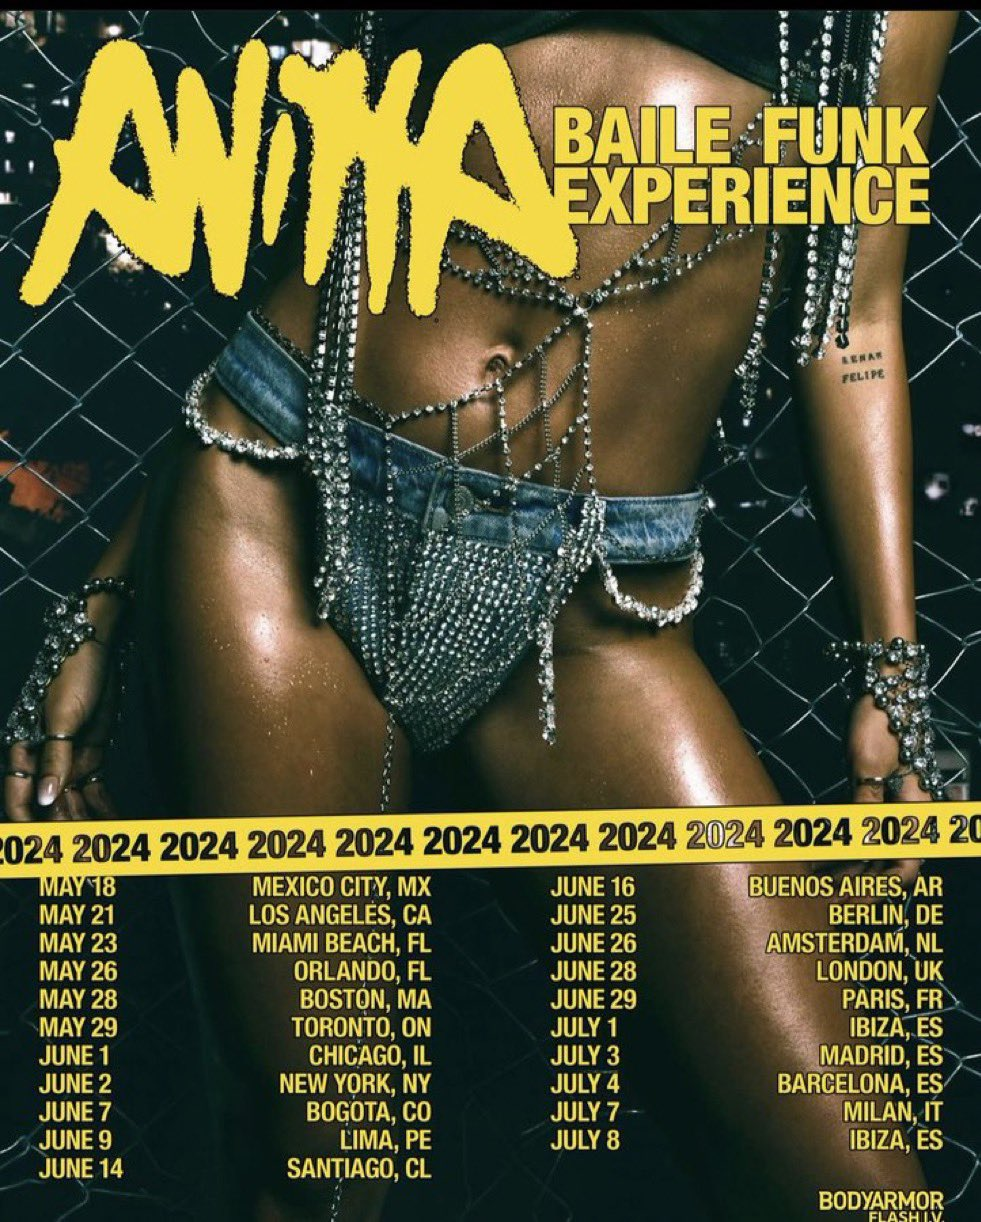 Com datas em NY e LA, Anitta anuncia a primeira turnê mundial 'The Baile Funk Experience'